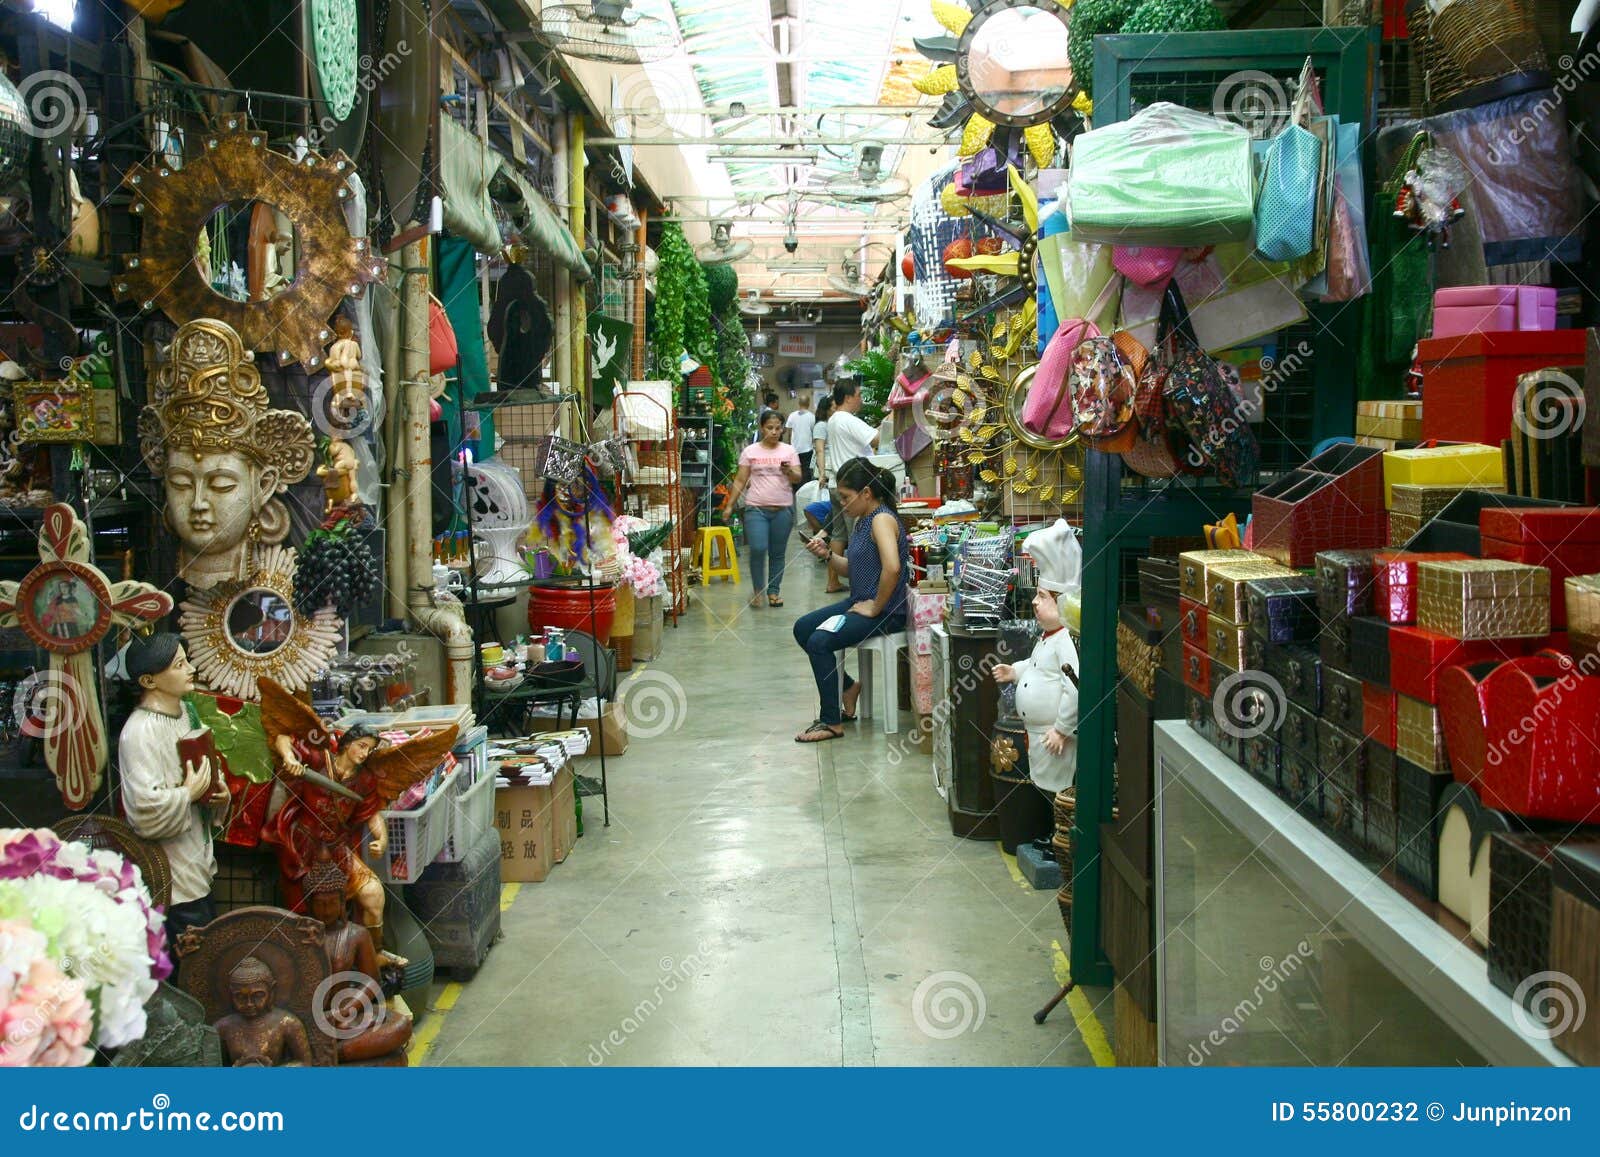 Flea Market Stores  In Dapitan Arcade In Manila 